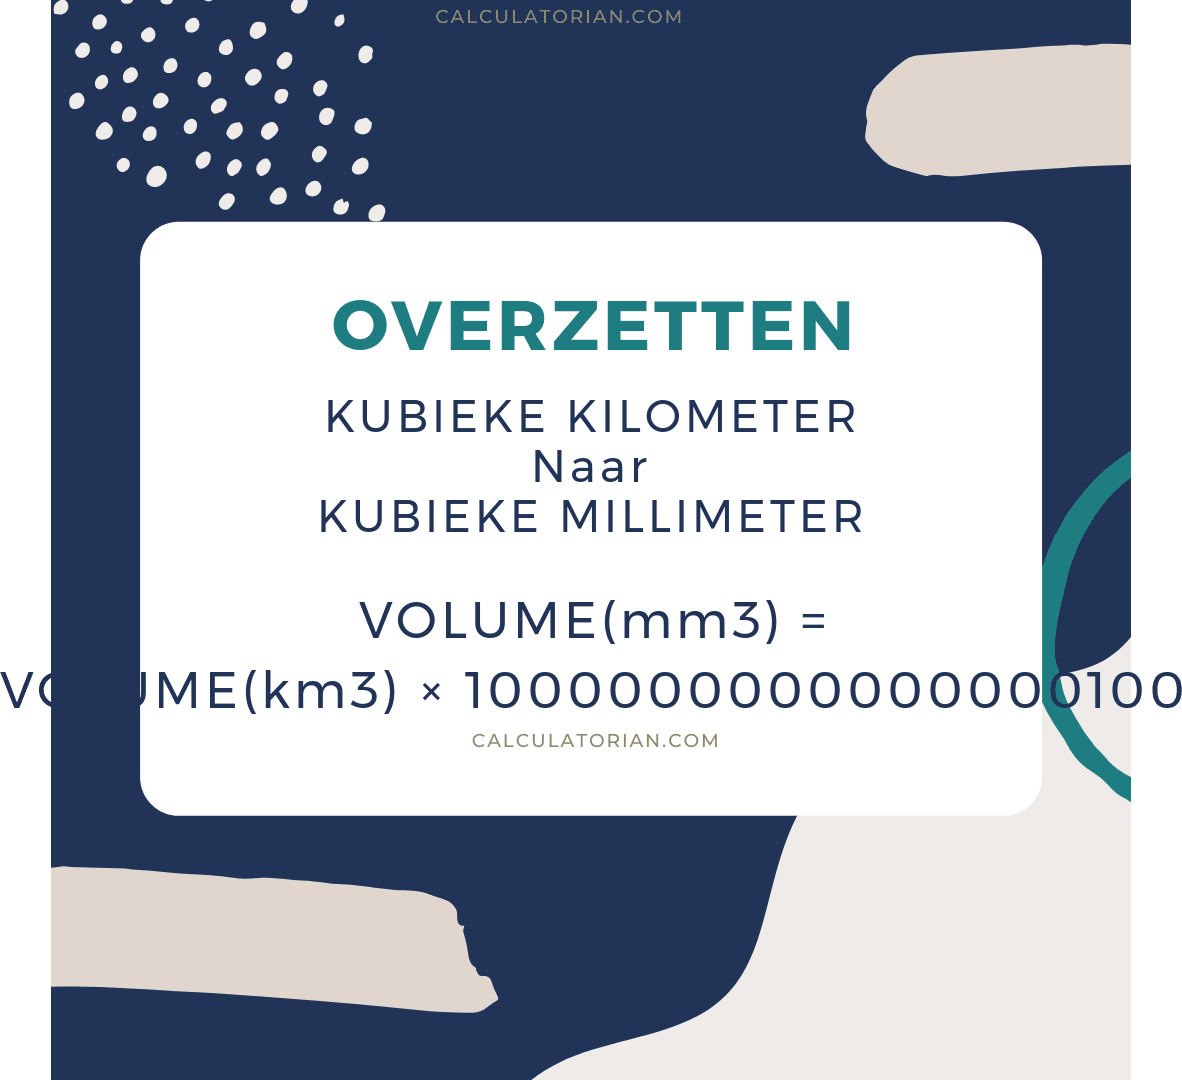 De formule voor het converteren van een volume van Kubieke kilometer naar Kubieke millimeter